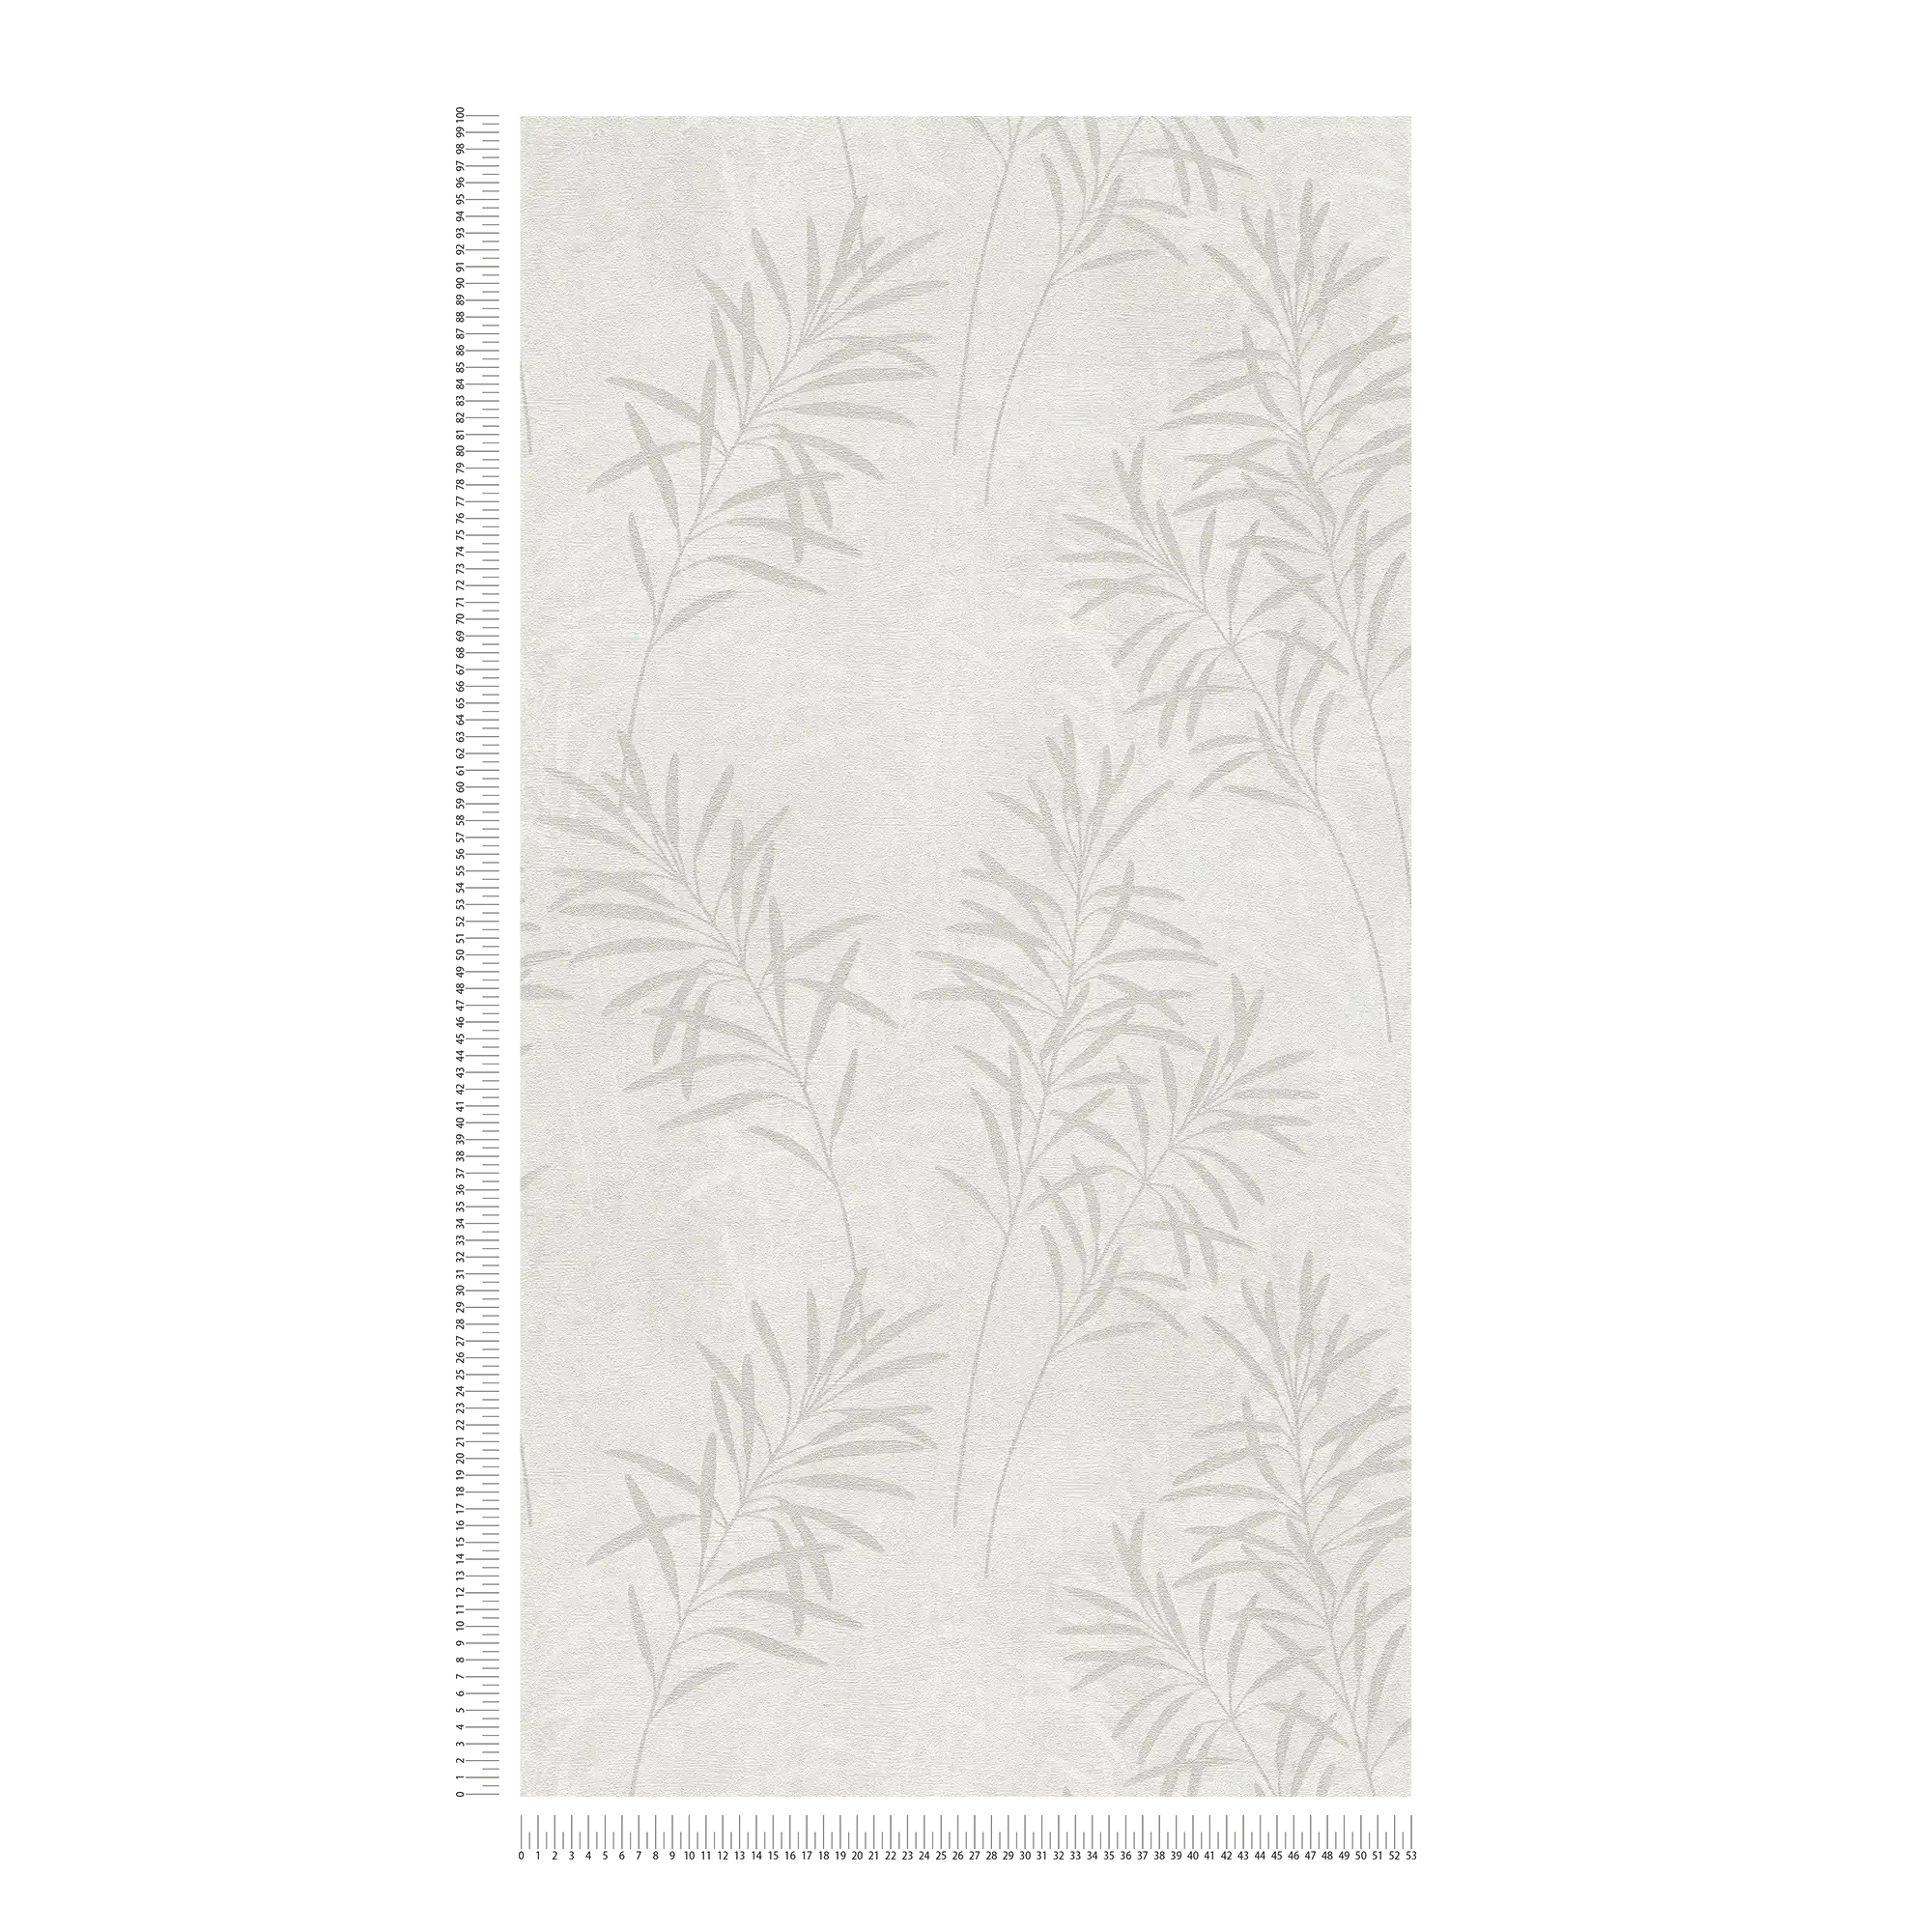             Carta da parati floreale in tessuto non tessuto con motivo a erba e struttura fine - bianco, grigio, metallizzato
        